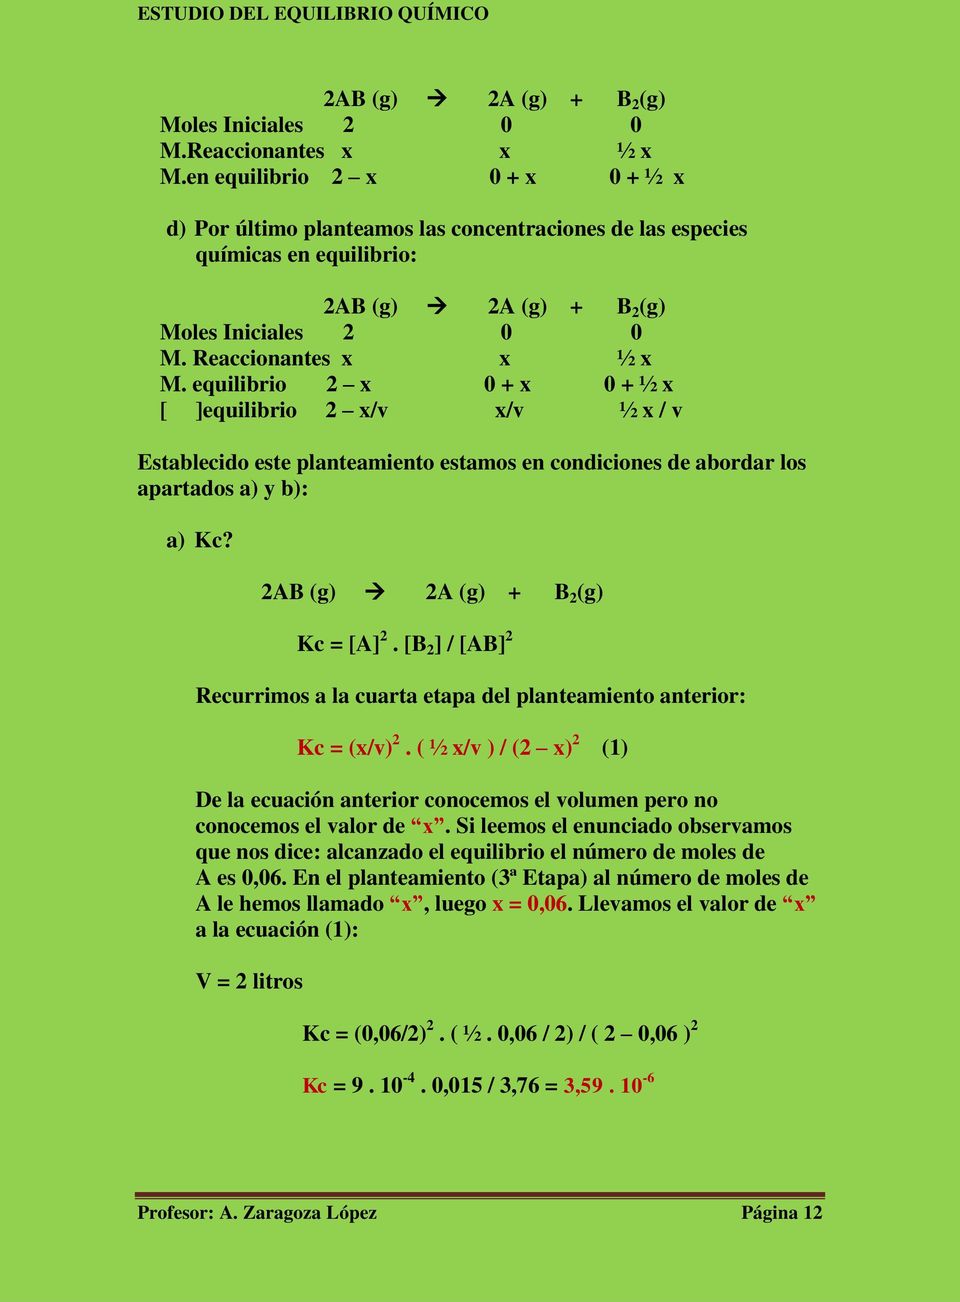 equilibrio 2 x 0 + x 0 + ½ x [ ]equilibrio 2 x/v x/v ½ x / v Establecido este planteamiento estamos en condiciones de abordar los apartados a) y b): a) Kc? 2AB (g) 2A (g) + B 2 (g) Kc = [A] 2.